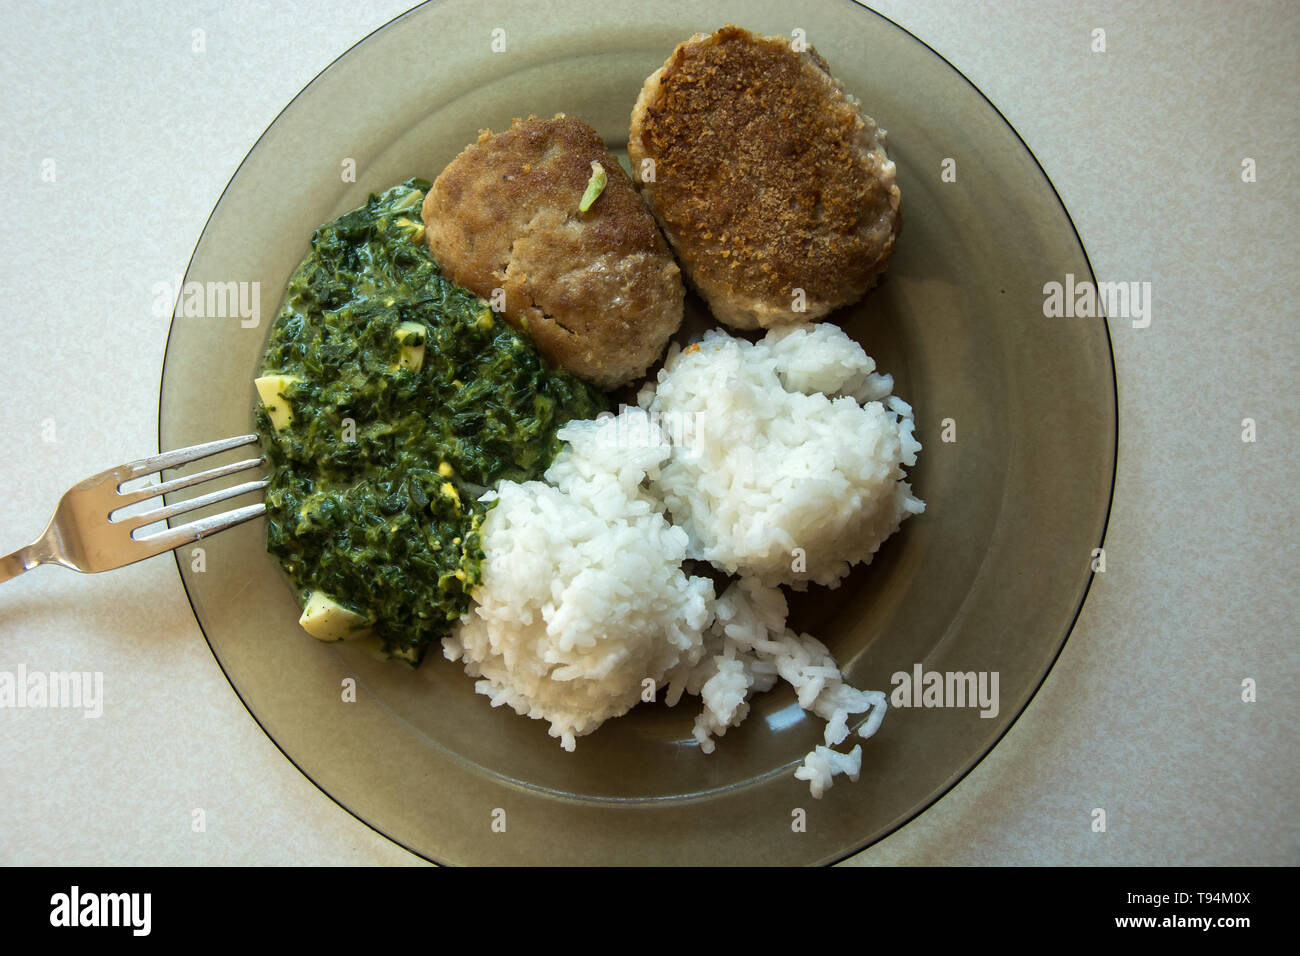 Teller auf eine Platte, die aus Hackfleisch/Schnitzel, Reis und Spinat - Ansicht von oben Stockfoto